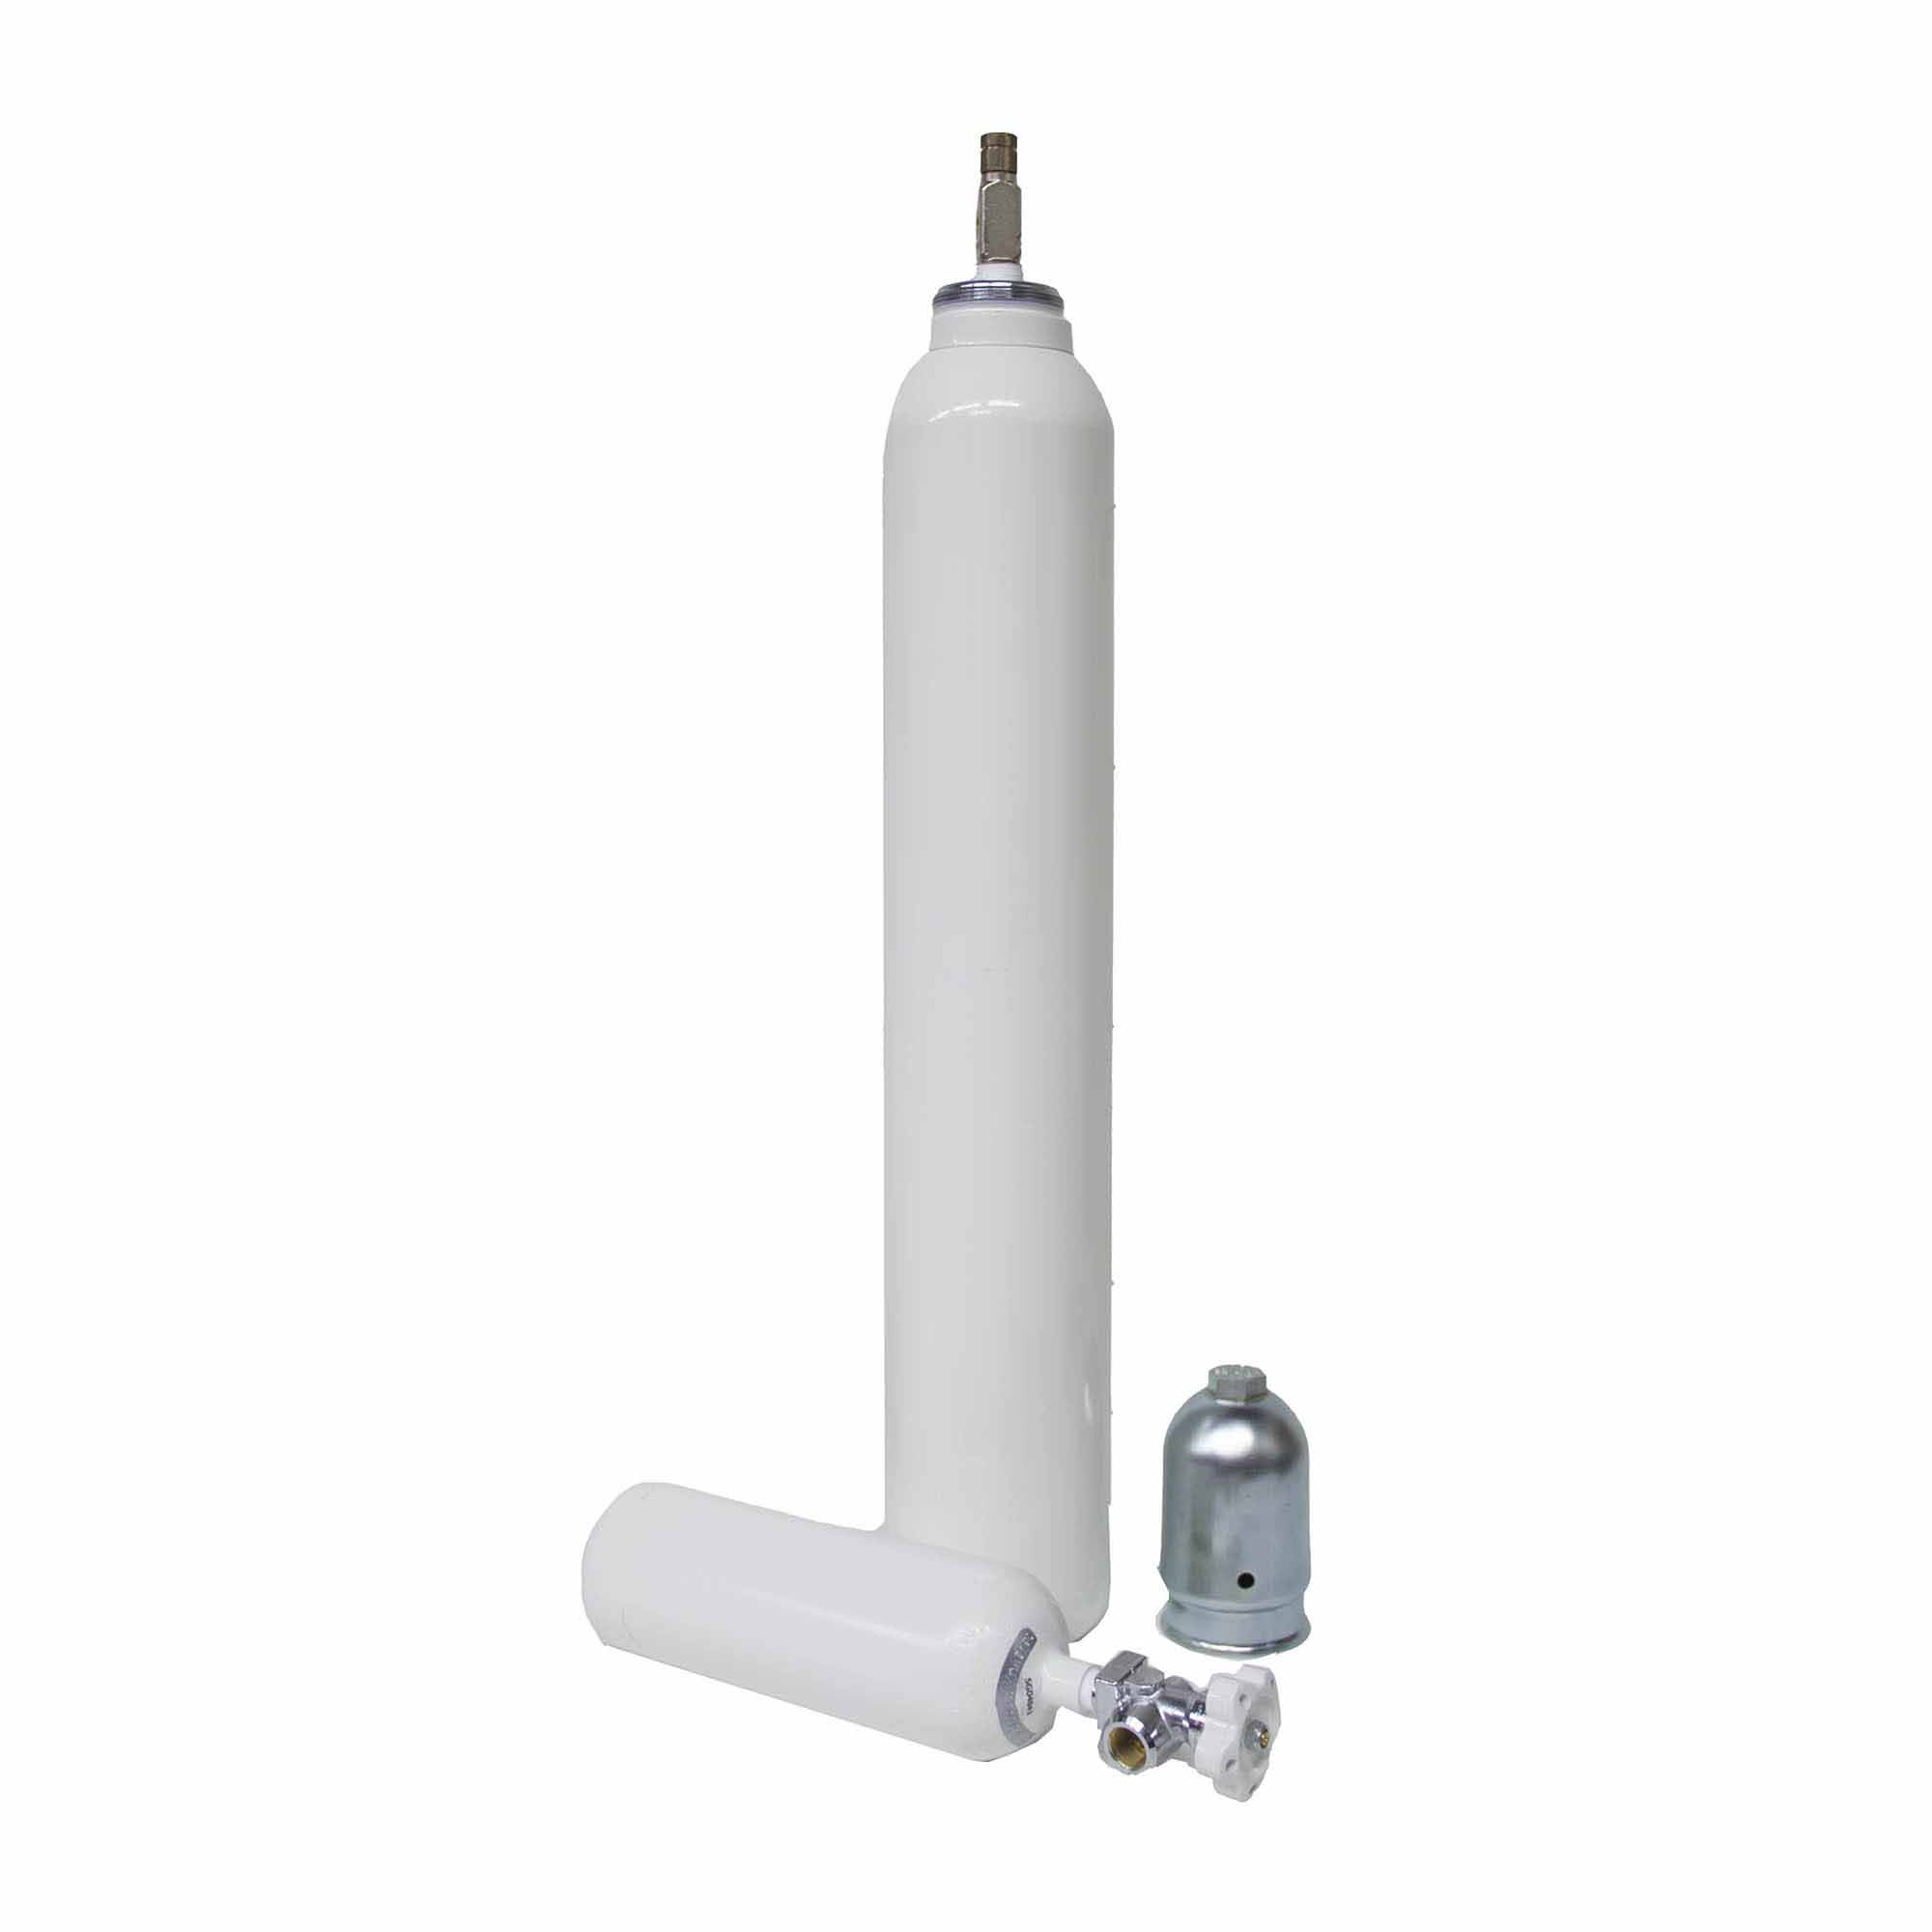 SG04840 Dräger Cilinder Medische Zuurstof De Dräger cilinder voor medische zuurstof, verkrijgbaar in 2, 5, 10 en 40 liter. Gevuld en inclusief beschermkap voor transport.